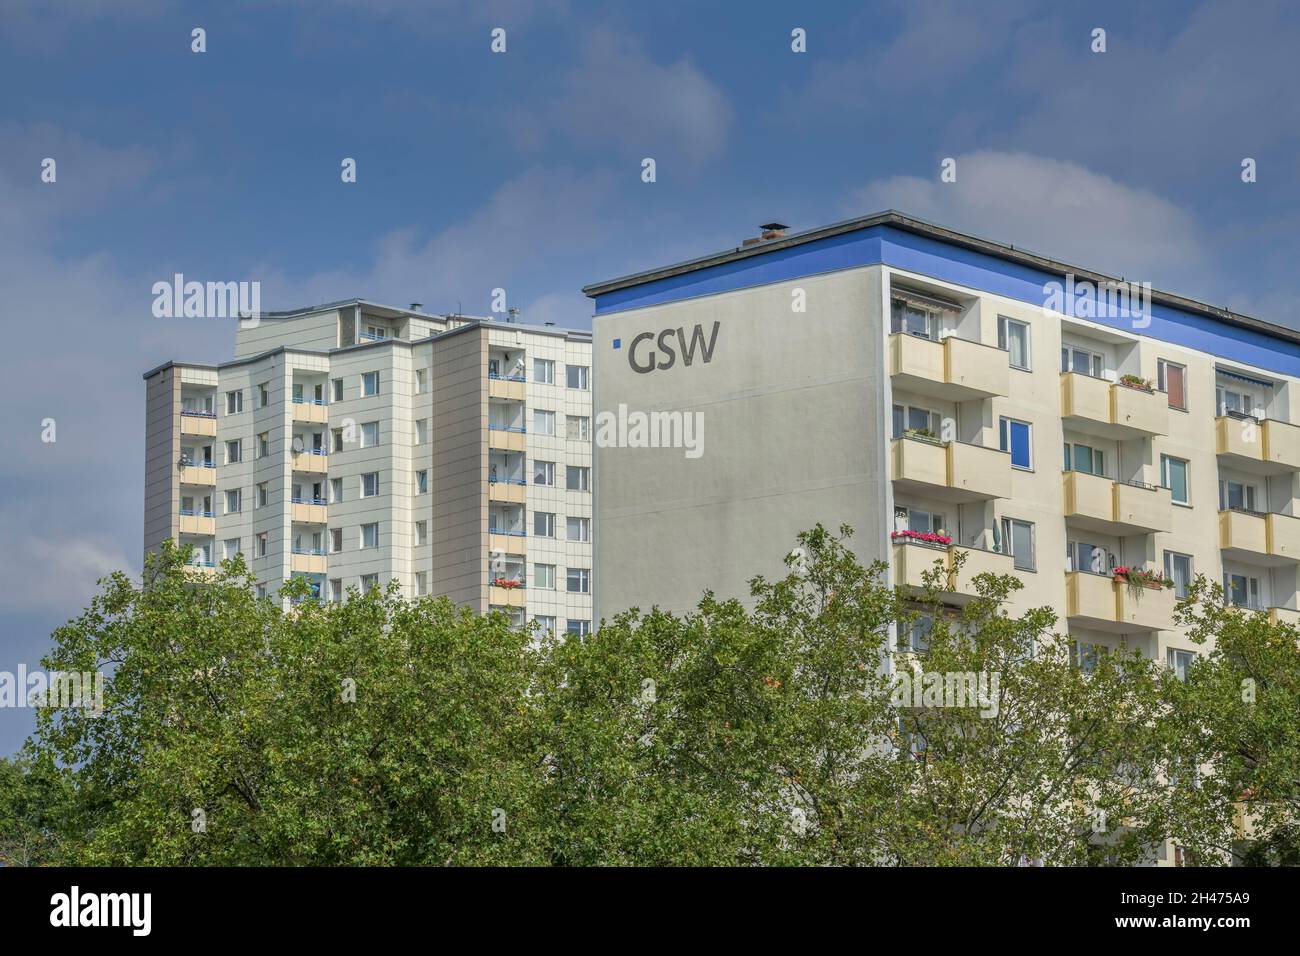 GSW Plattenbau, Falkenhagener Chaussee, Falkenhagener Feld, Spandau, Berlin, Deutschland Stock Photo